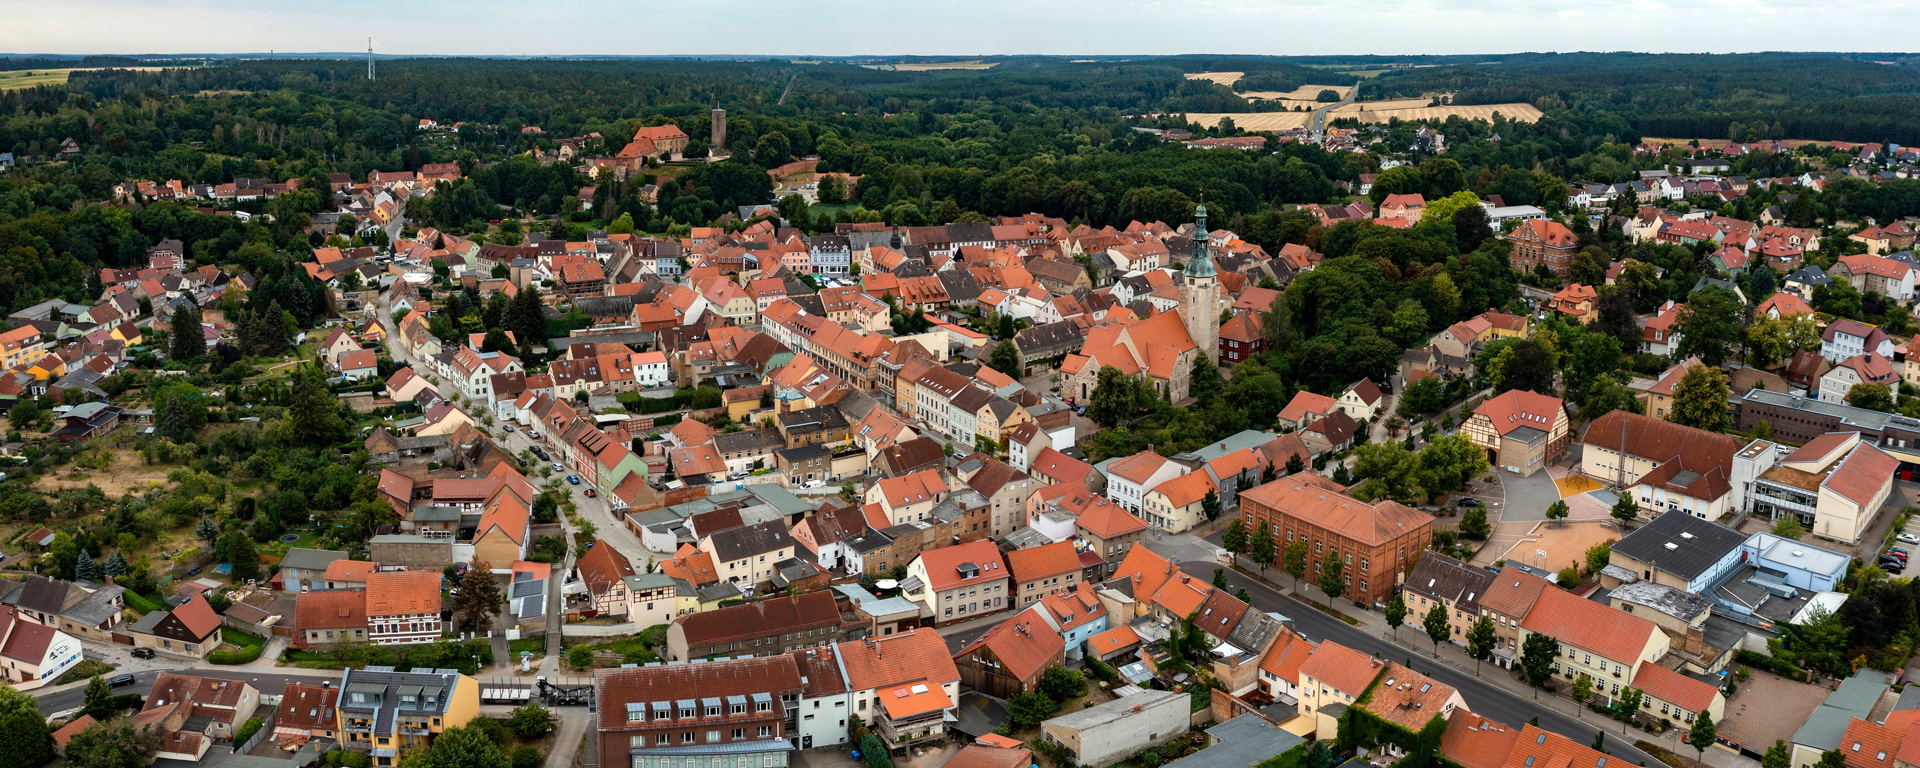 Luftaufnahme der Stadt Bad Belzig mit Blick über Bäume und Innenstadt